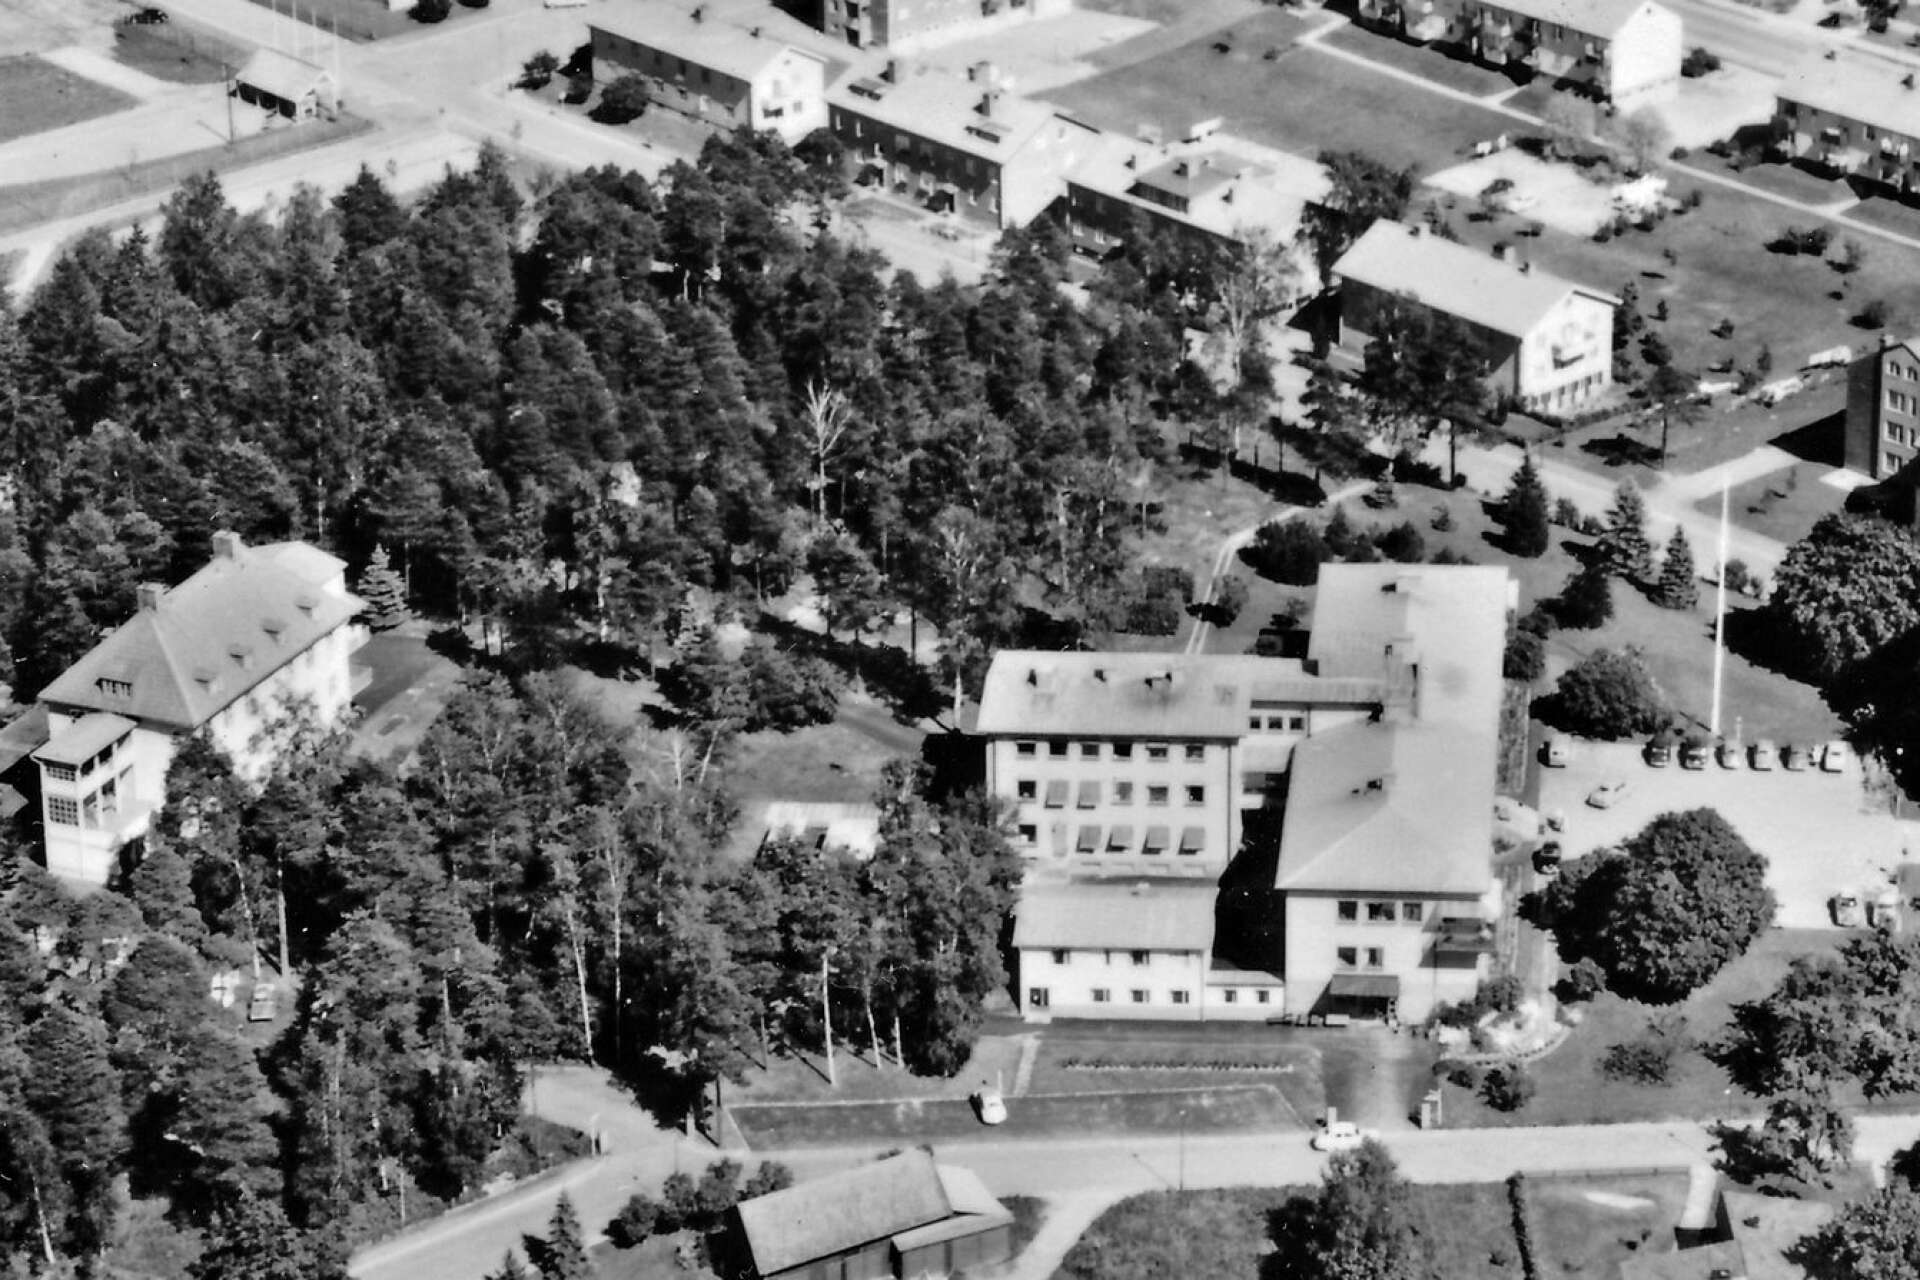 På flygfotot från 1961 ser man sjukhuset som byggdes 1940. BB låg på andra våningen i vinkelbyggnaden på baksidan. Där föddes många barn i Säffle innan nya sjukhuset stod klart 1967. Den vita byggnaden till vänster är före detta sanatoritet, som användes för medicinavdelningen.